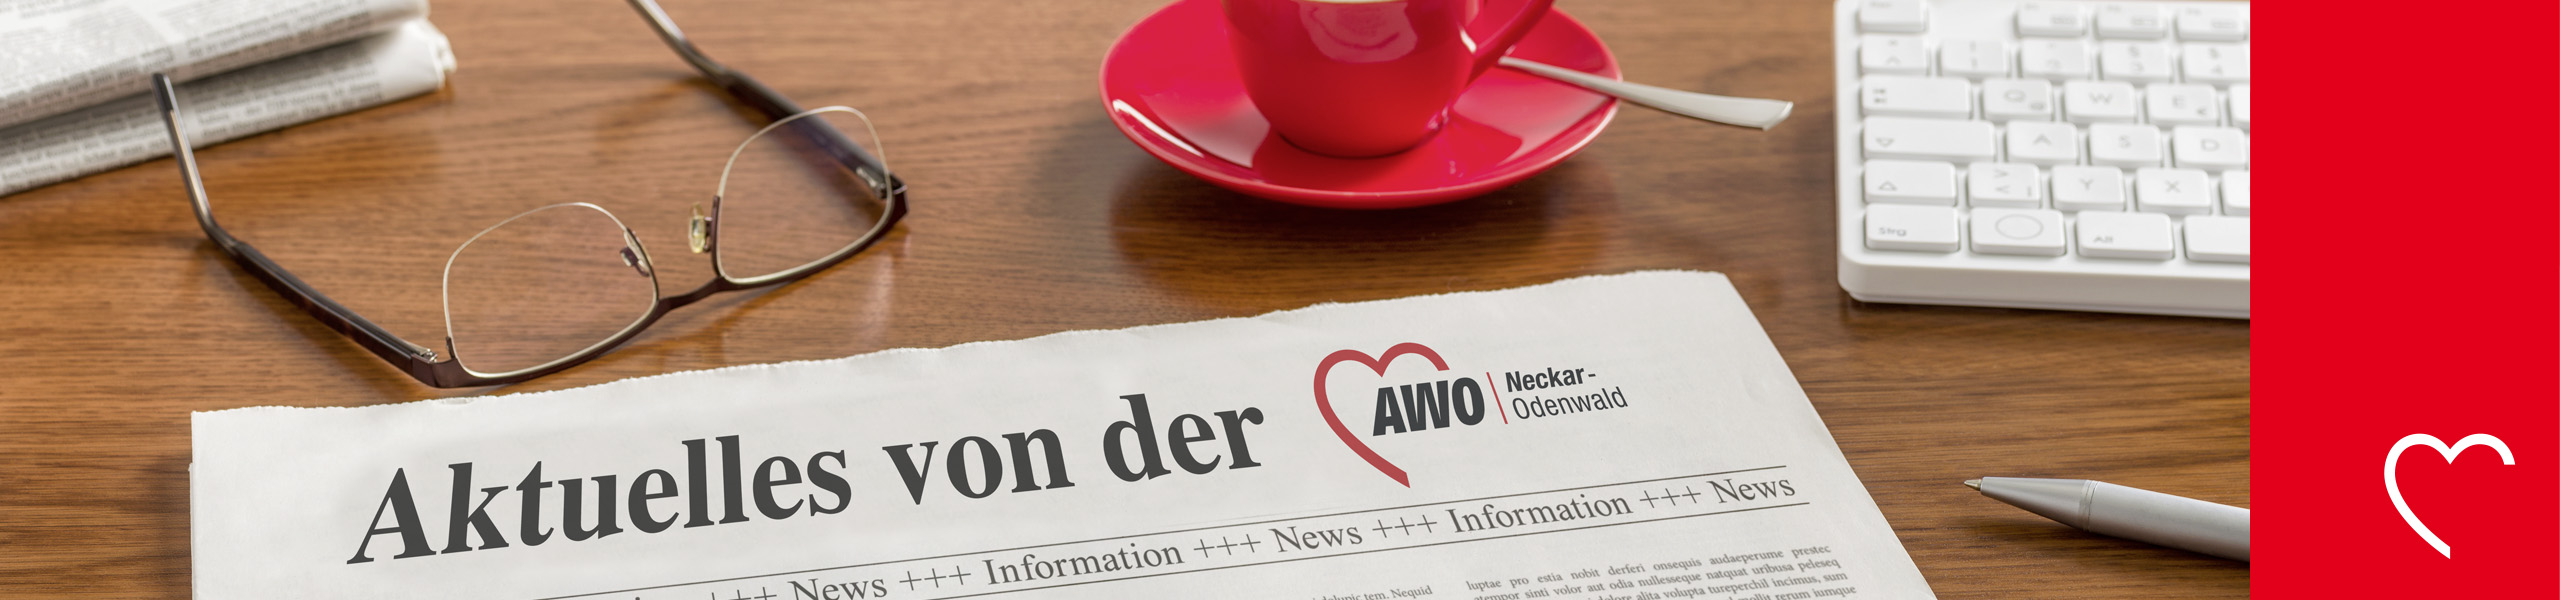 AWO Neckar-Odenwald gGmbH - Kein Sparen auf Kosten von Pflege und Familiengesundheit!